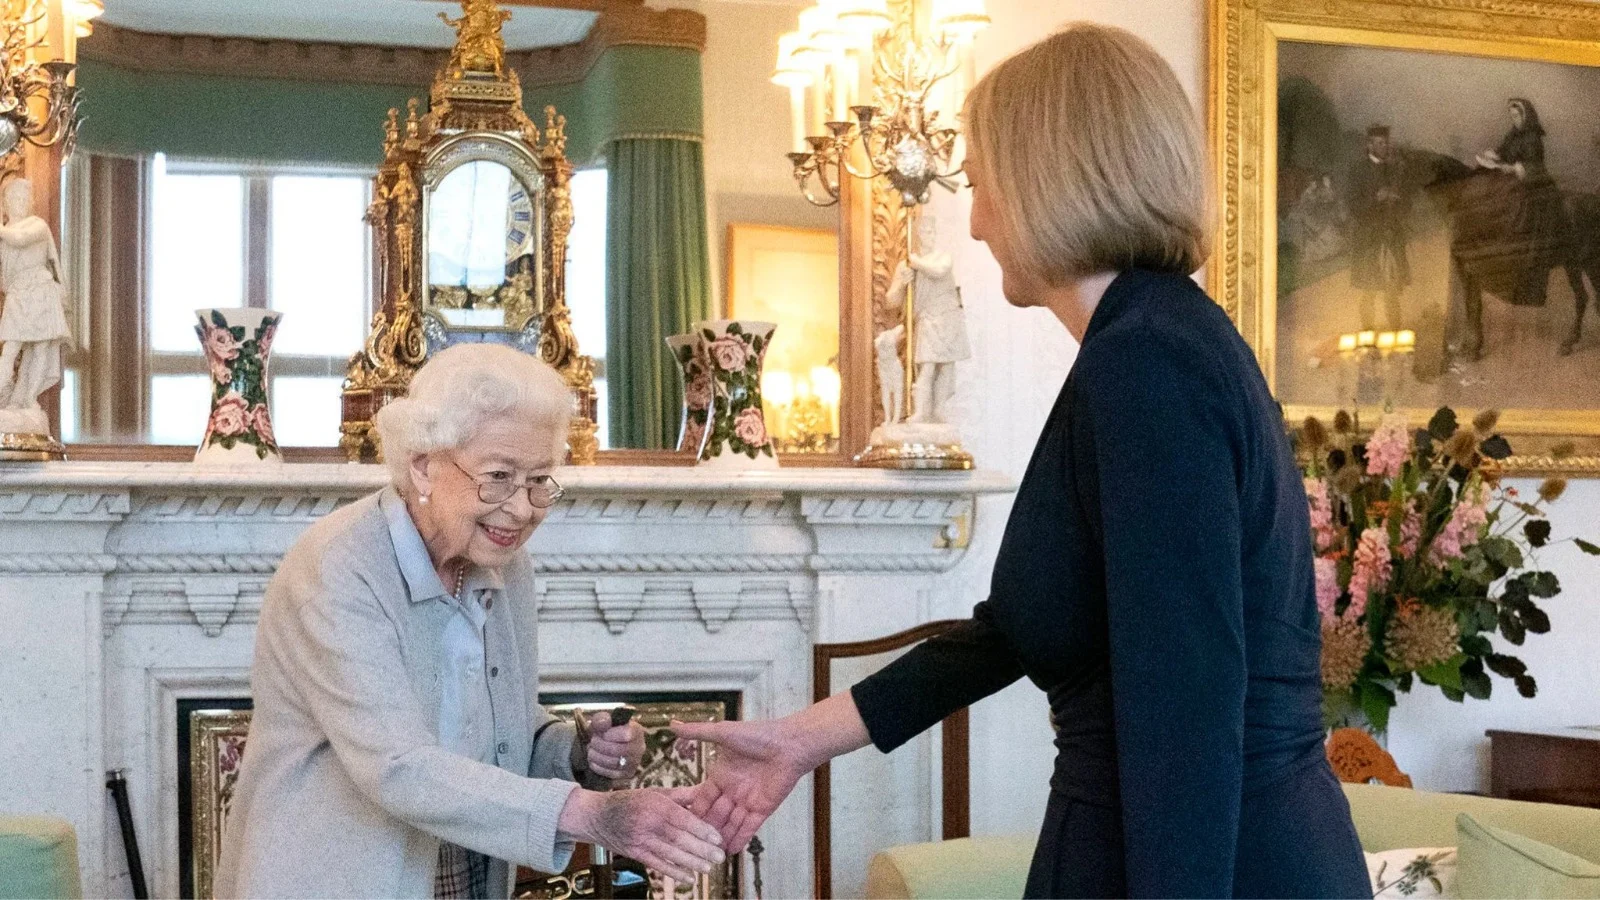 תמונתה האחרונה של המלכה אליזבת יחד עם ראש הממשלה הנכנסת ליז טראס